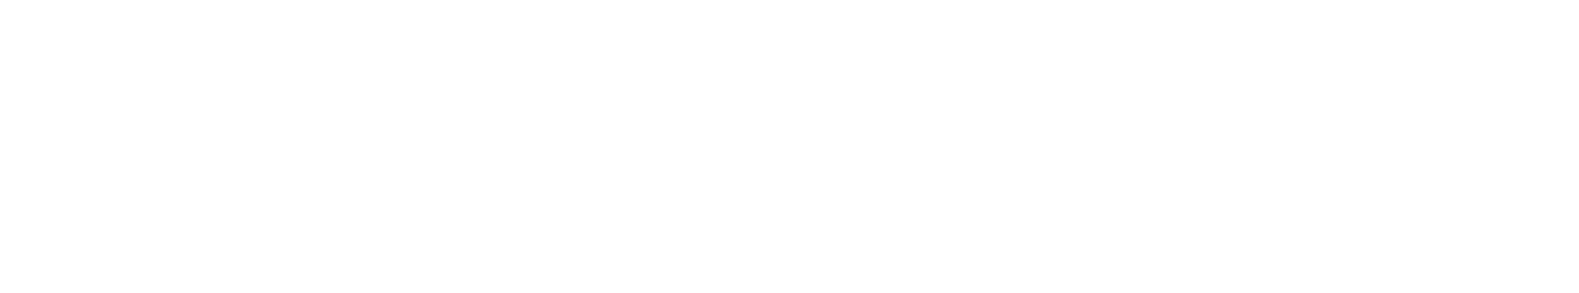 Singapore Land logo grand pour les fonds sombres (PNG transparent)